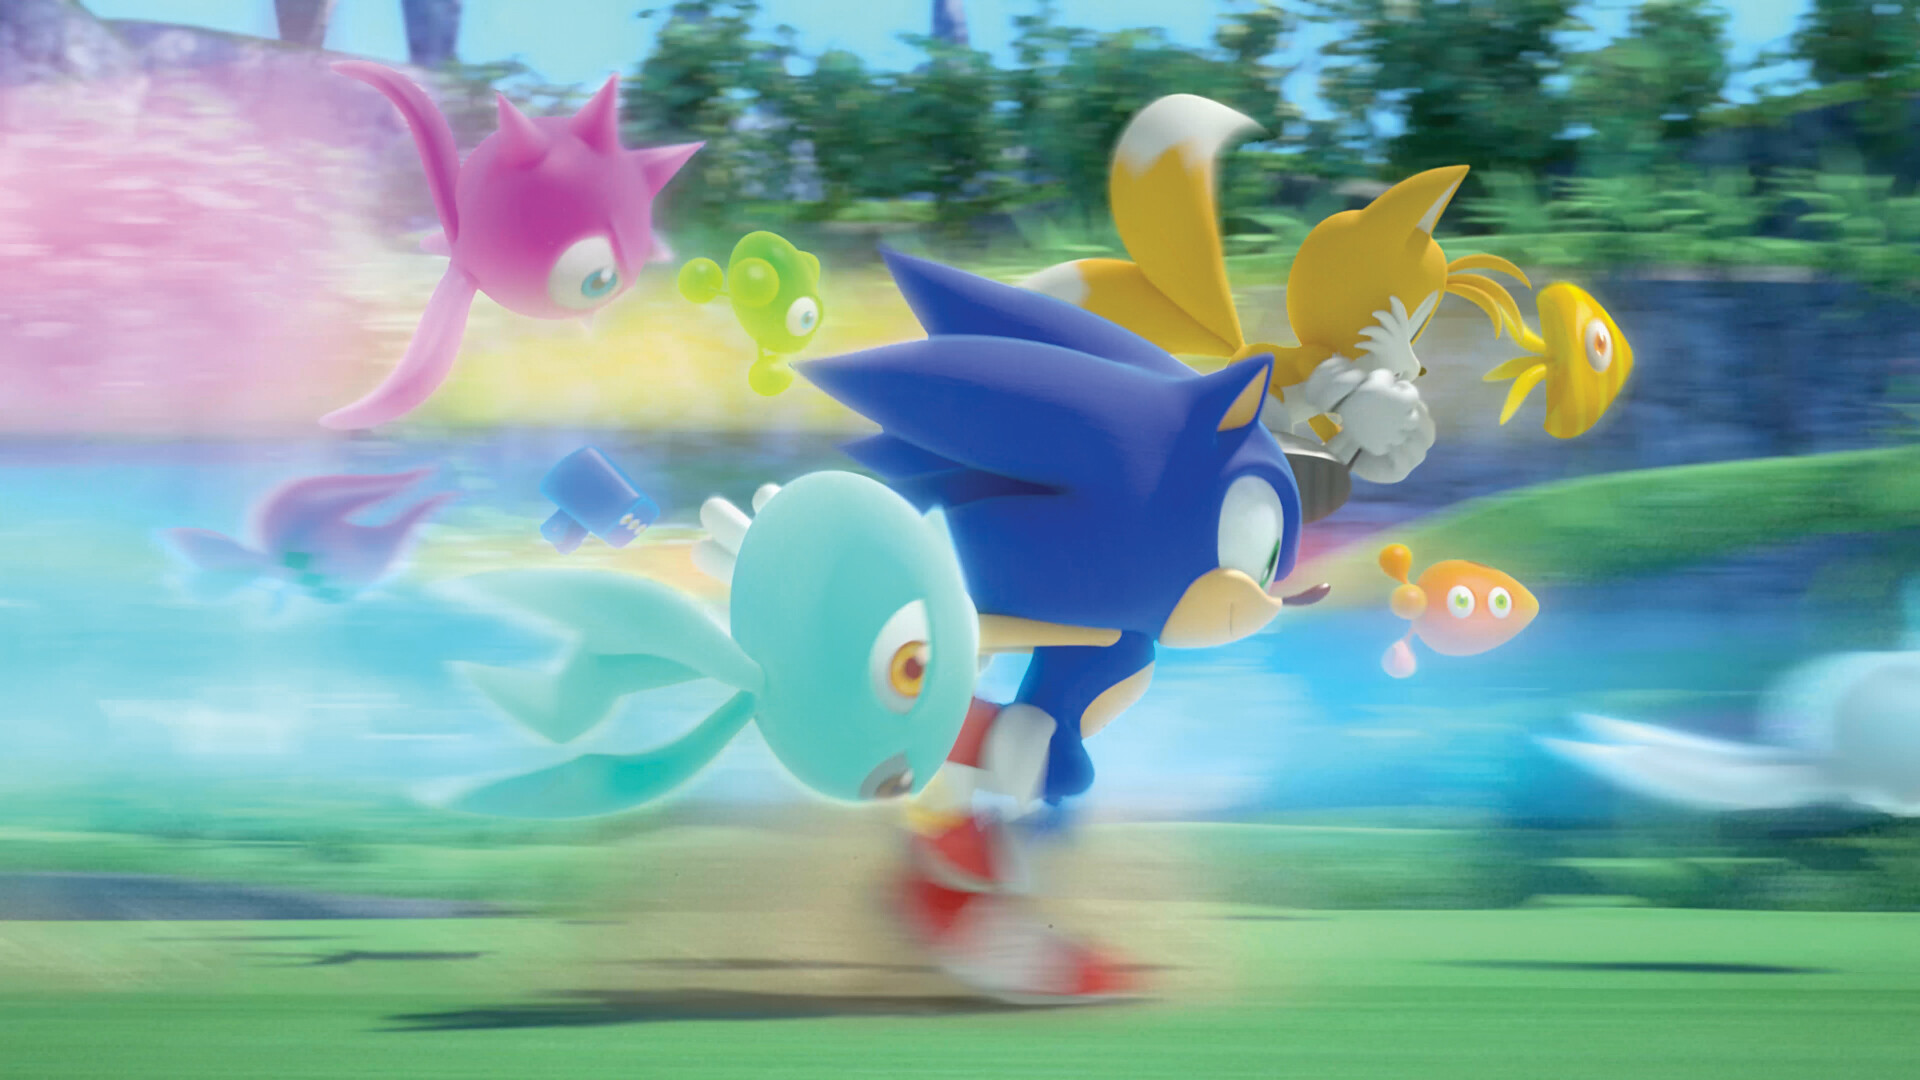 Sonic Colors: Ultimate - Ensemble cosmétique Ultimate